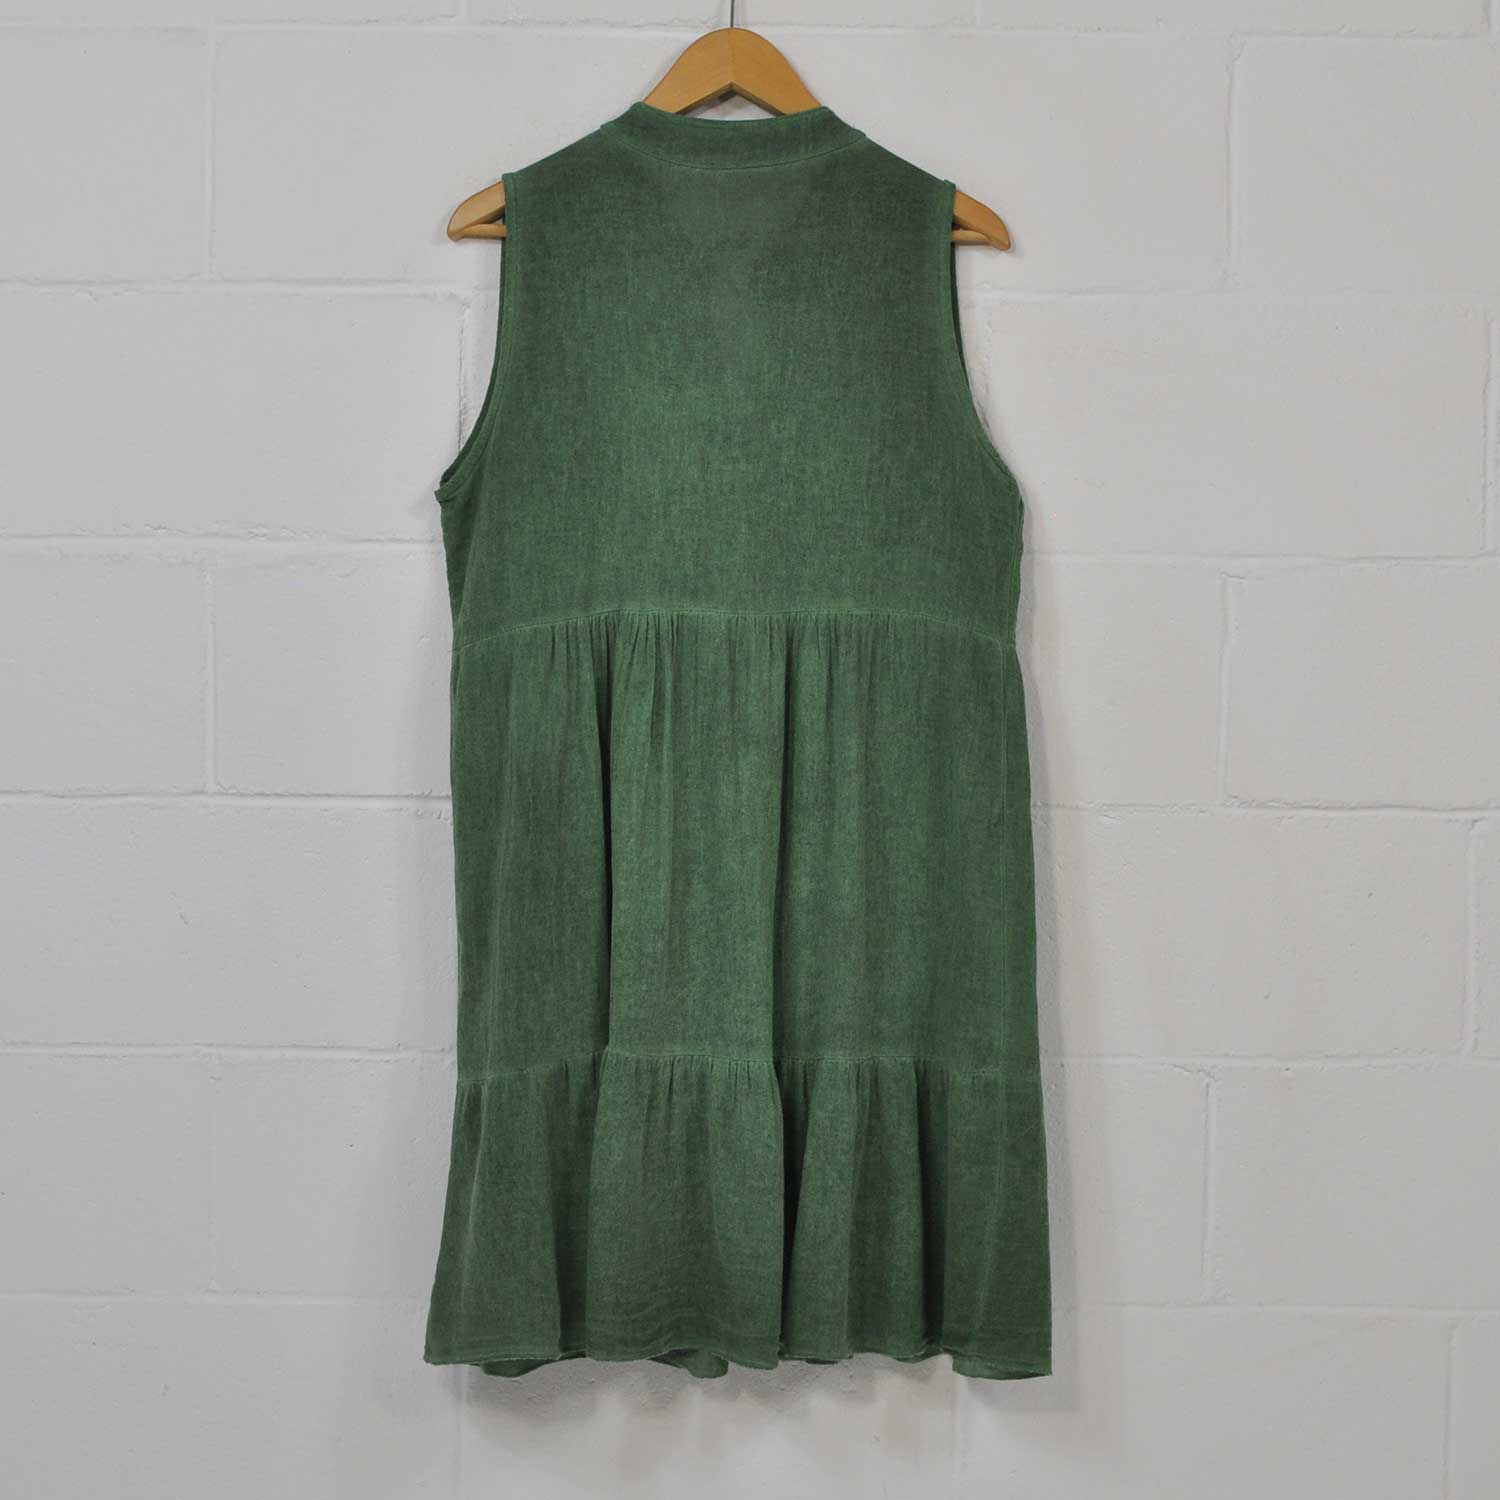 Green ruffles cotton dress